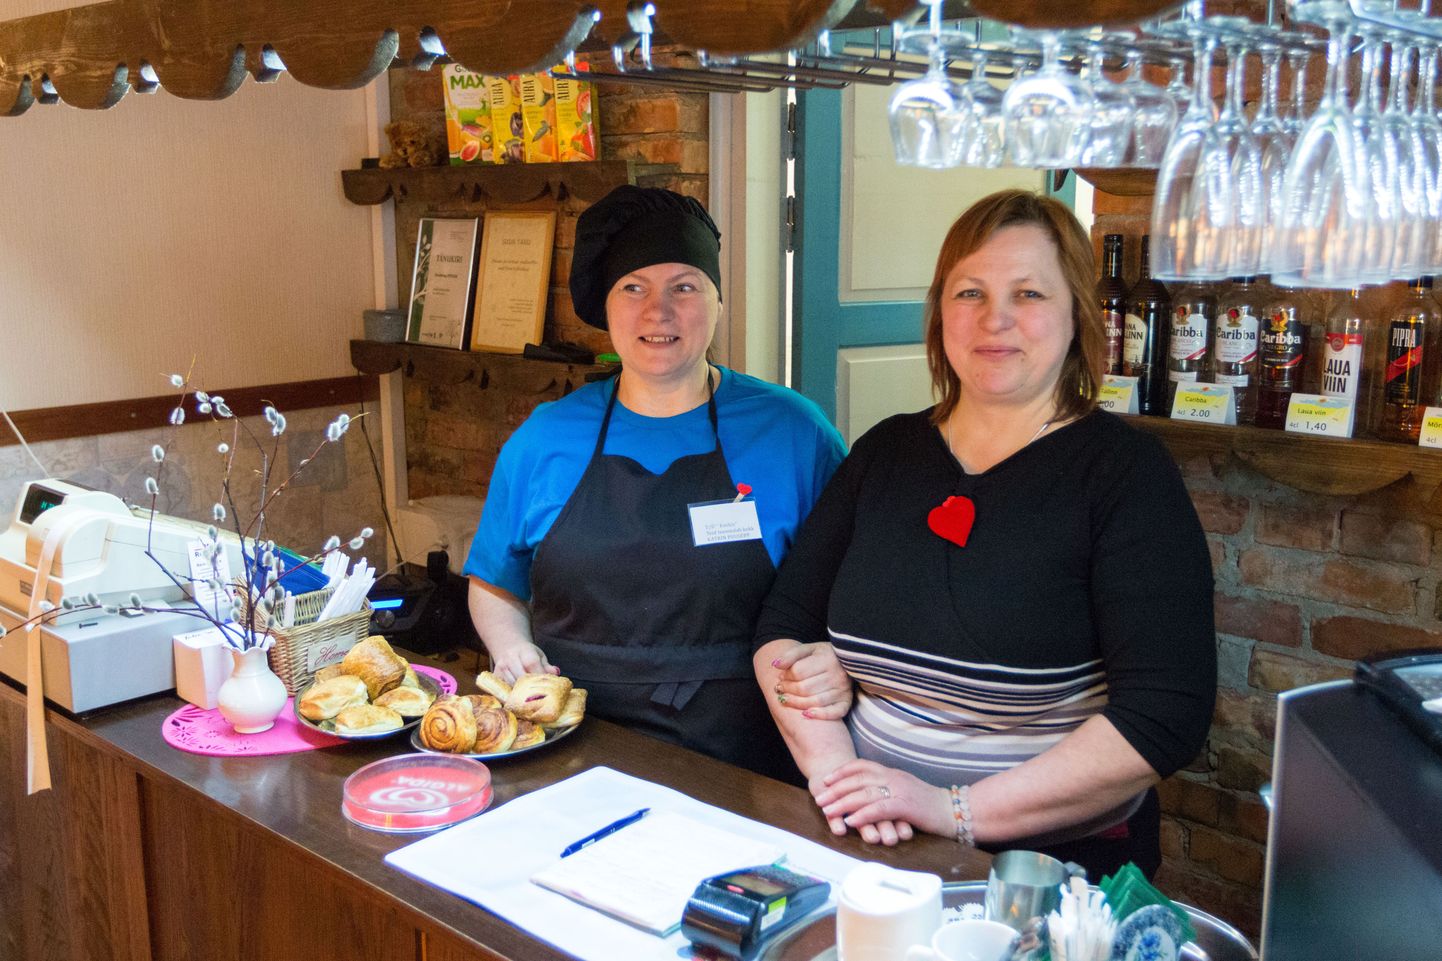 Kaks tegusat naist Eveli Sarv (paremal) ja Katrin Puusepp kannavad hoolt selle eest, et nii kohalikud, ümberkaudsed kui möödasõitjad kohvikus maitsva ja korraliku kõhutäie kätte saavad.